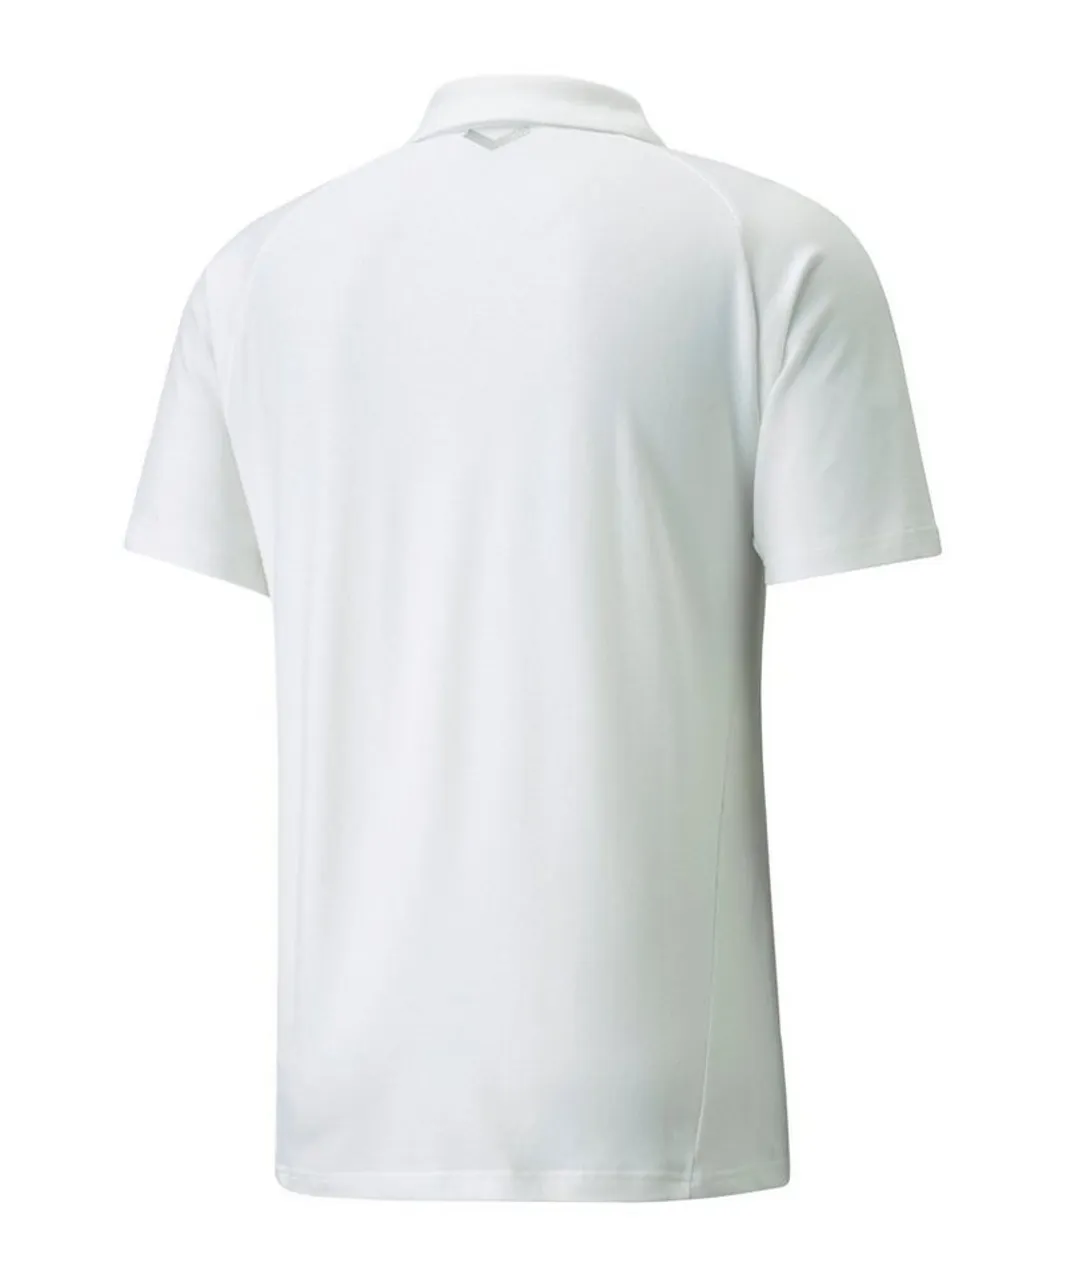 PUMA T-Shirt teamFINAL Casuals Poloshirt default